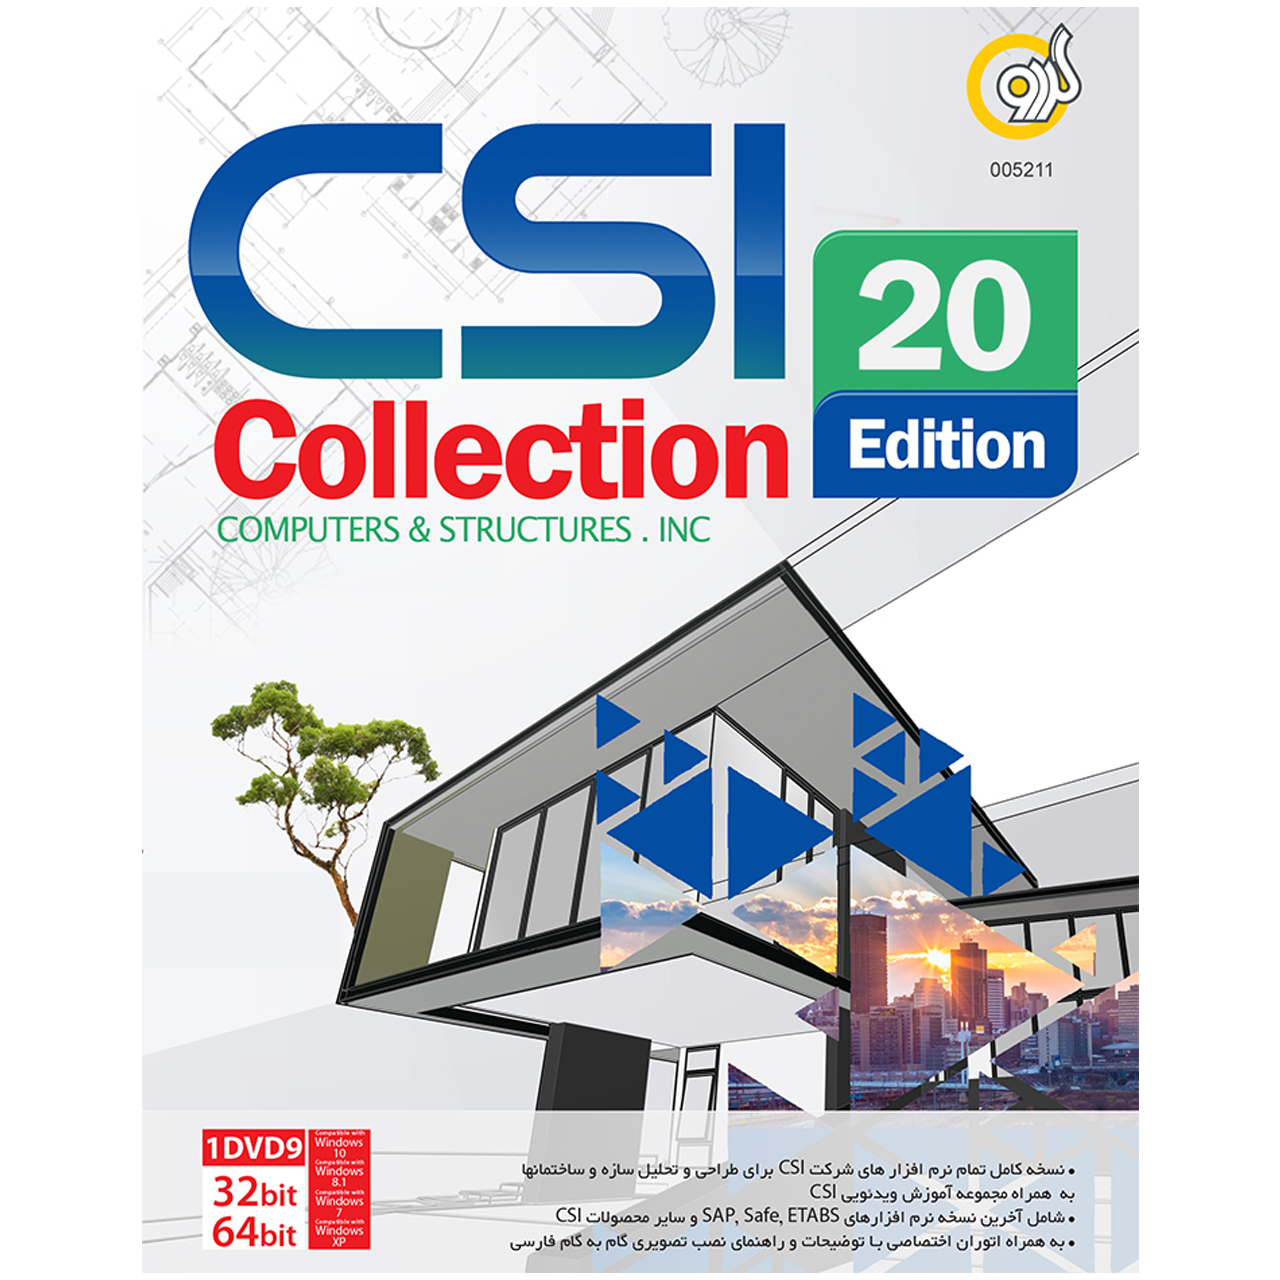 نرم افزار گردو CSI Collection 20th Edition